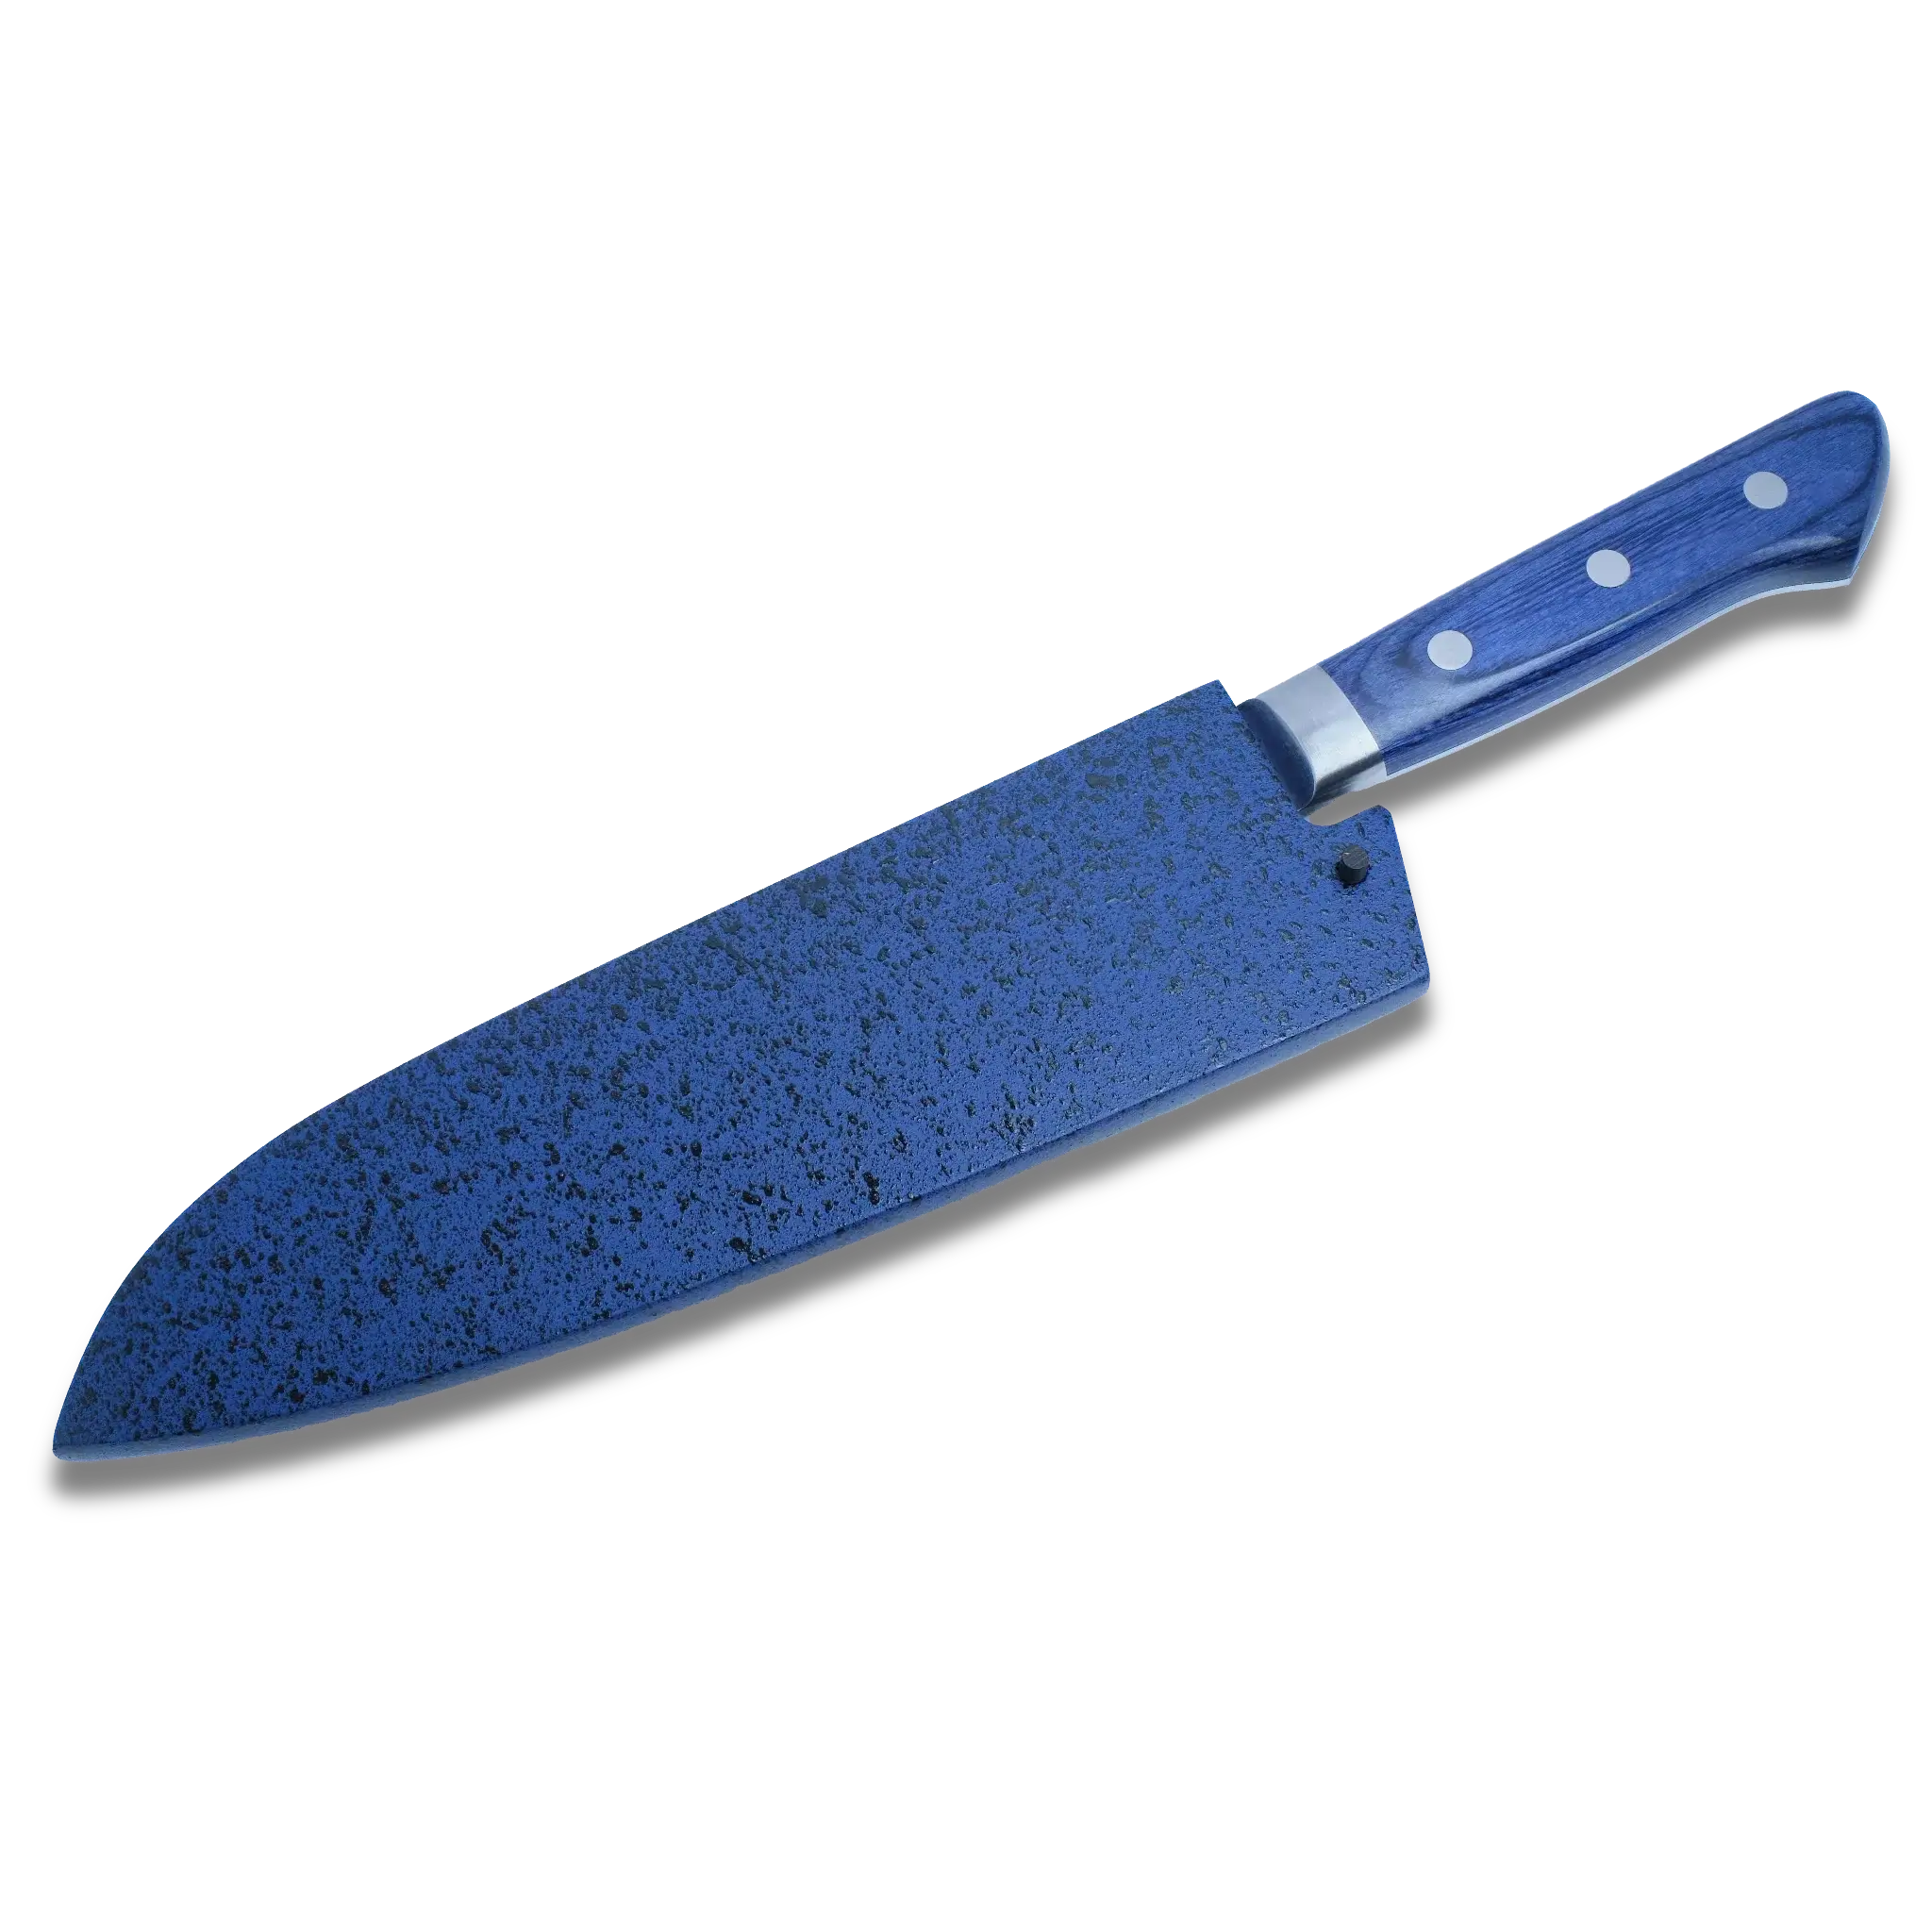 Sheath / Says Ho Wood (Magnolia) for  180mm Santoku Knife